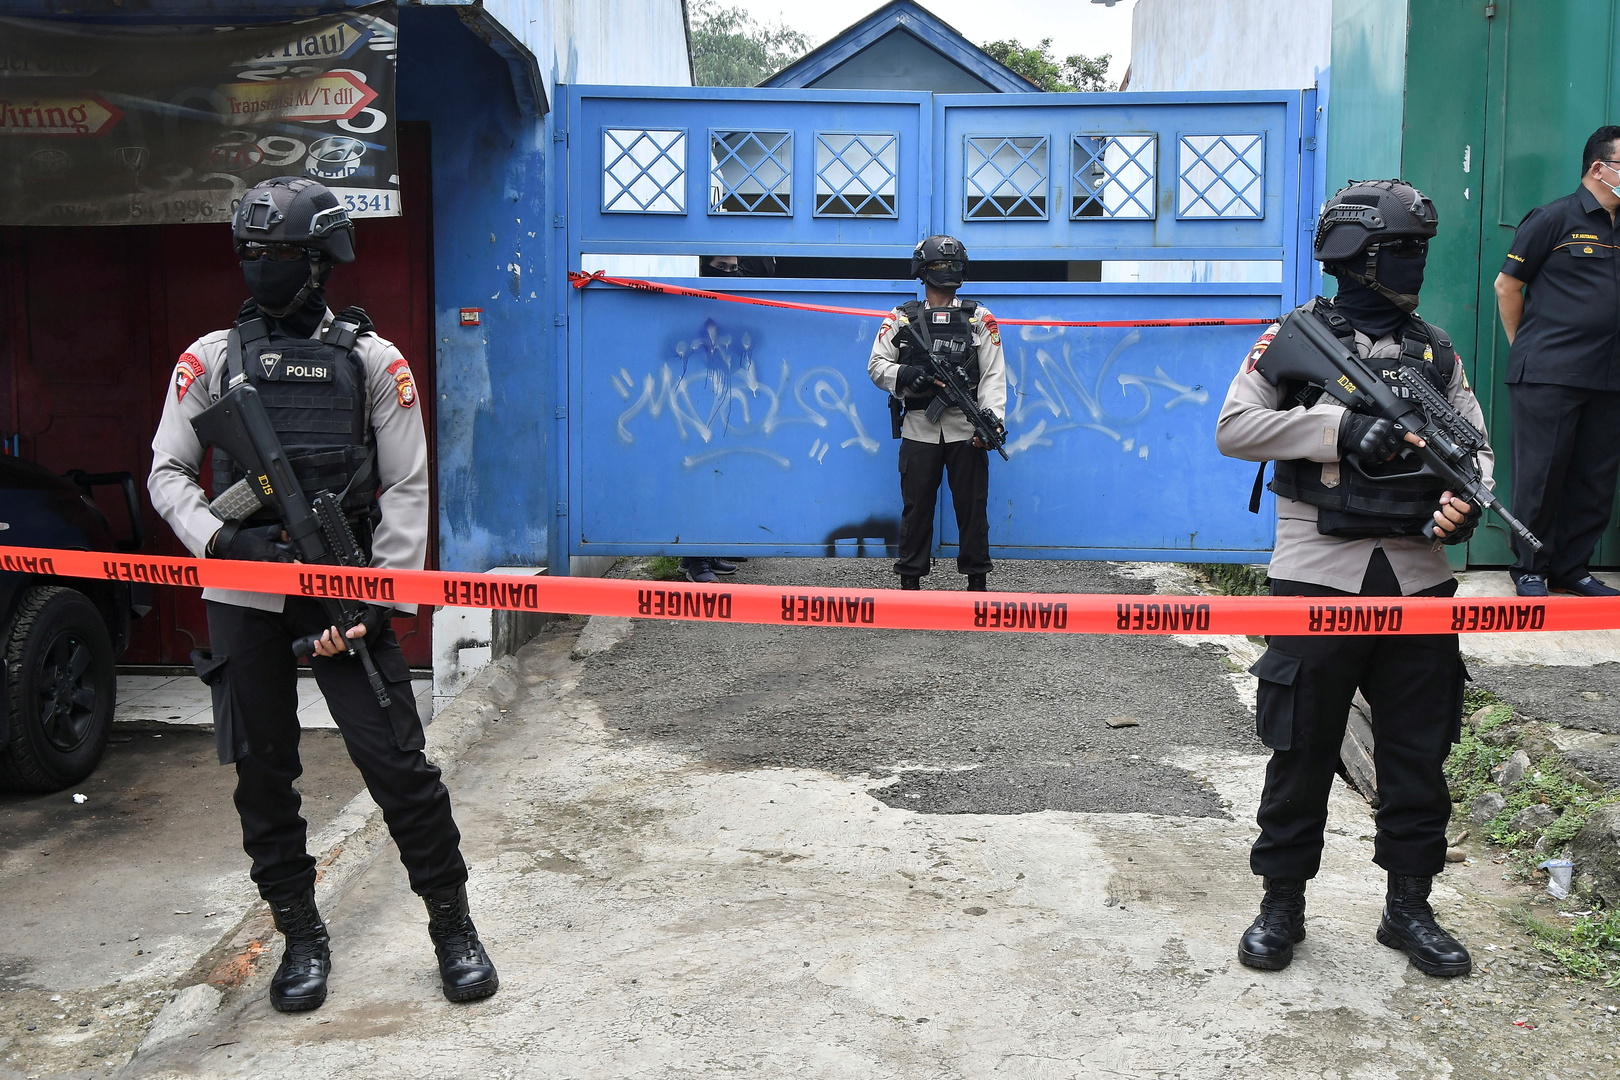 إندونيسيا.. توقيف رجل وامرأة على خلفية التفجير الانتحاري وضبط متفجرات